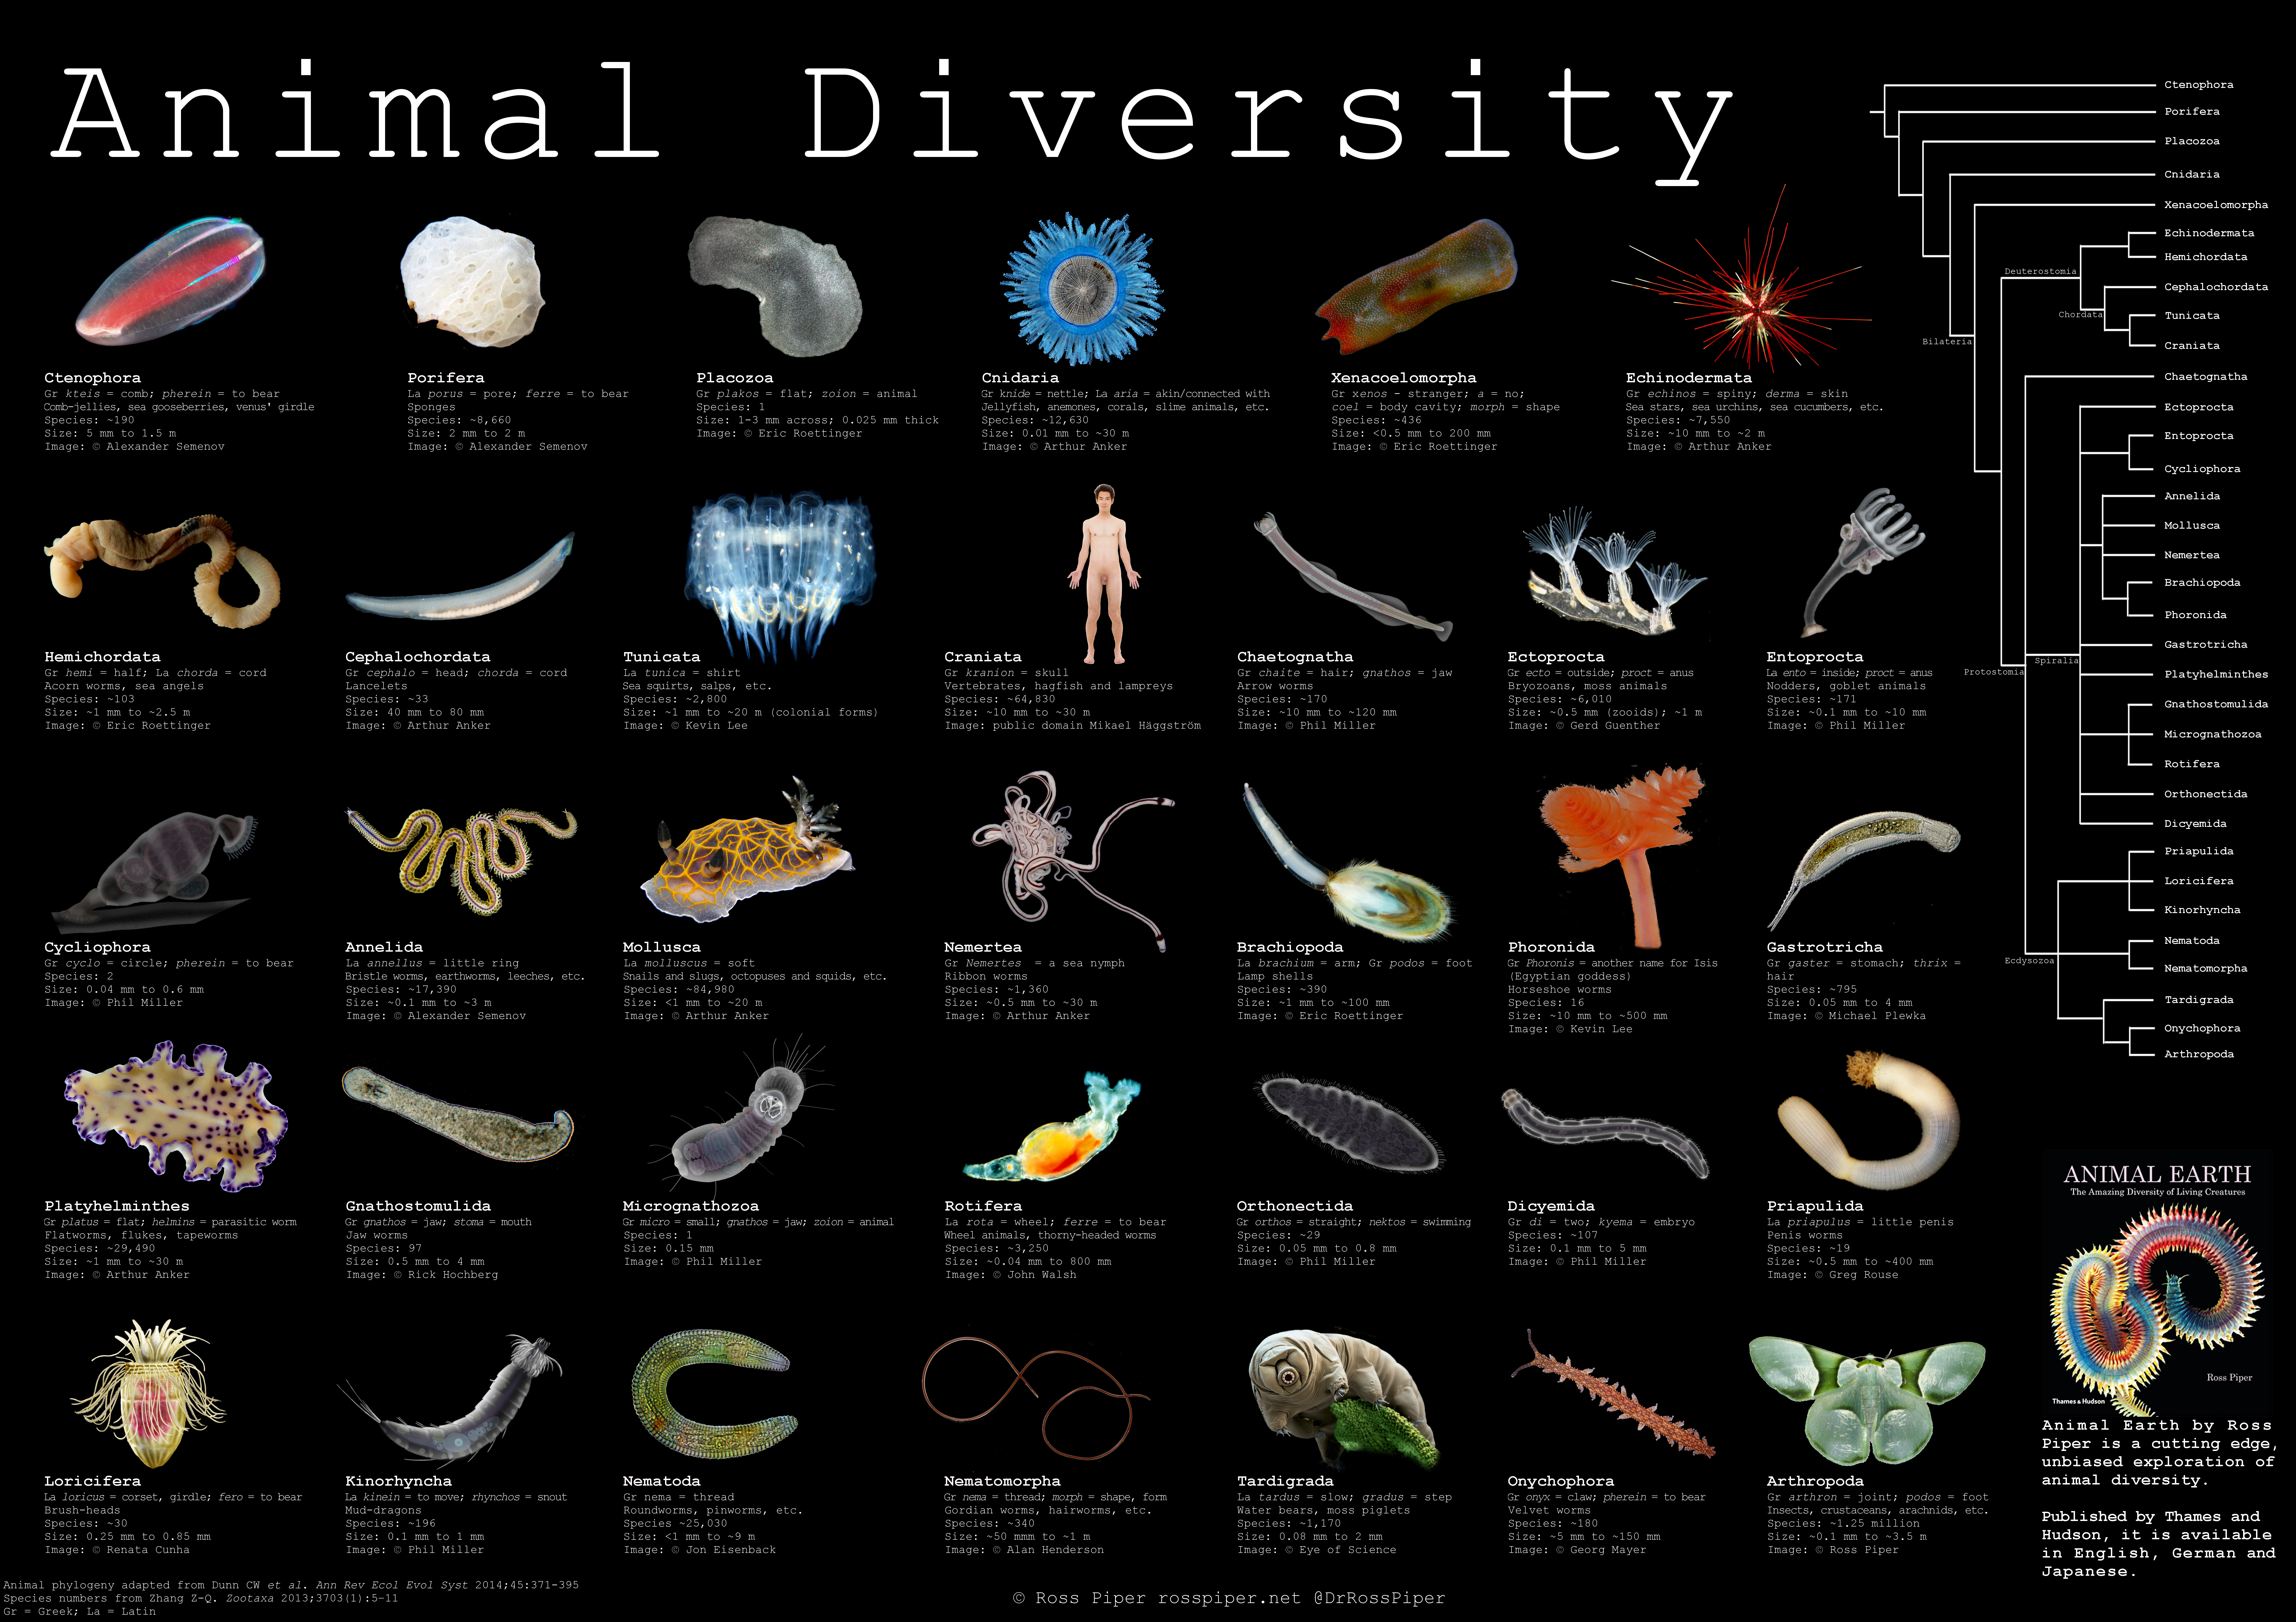 Animal diversity - Dr. Ross Piper